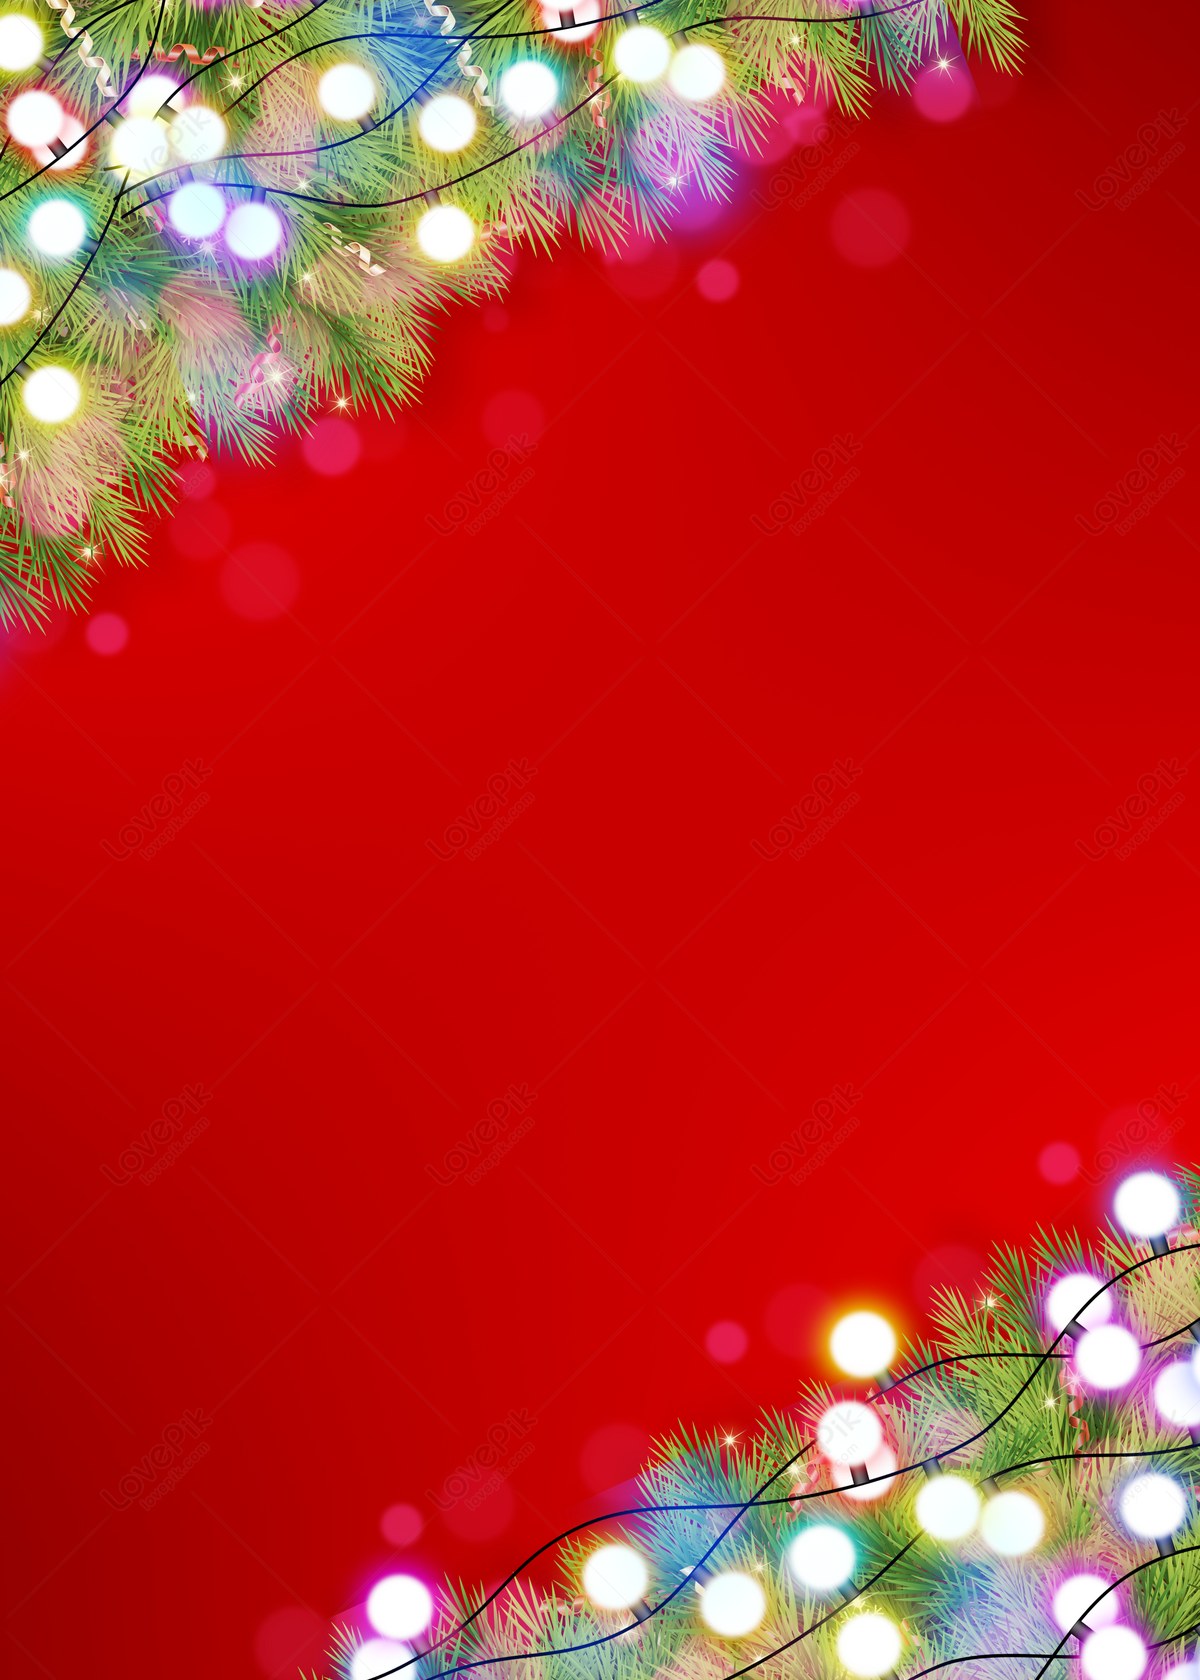 Hình Nền Giáng Sinh Màu Đỏ: Hình nền Giáng Sinh màu đỏ luôn tạo cảm giác ấm áp và những ngày đông lạnh giá trong tâm trí bạn. Những hình ảnh tuyệt đẹp về những con tuyết rơi hay những ngôi nhà đầy tráng lệ, tất cả đều tạo nên một bộ sưu tập hình ảnh đáng yêu để bạn sẽ không muốn bỏ lỡ!